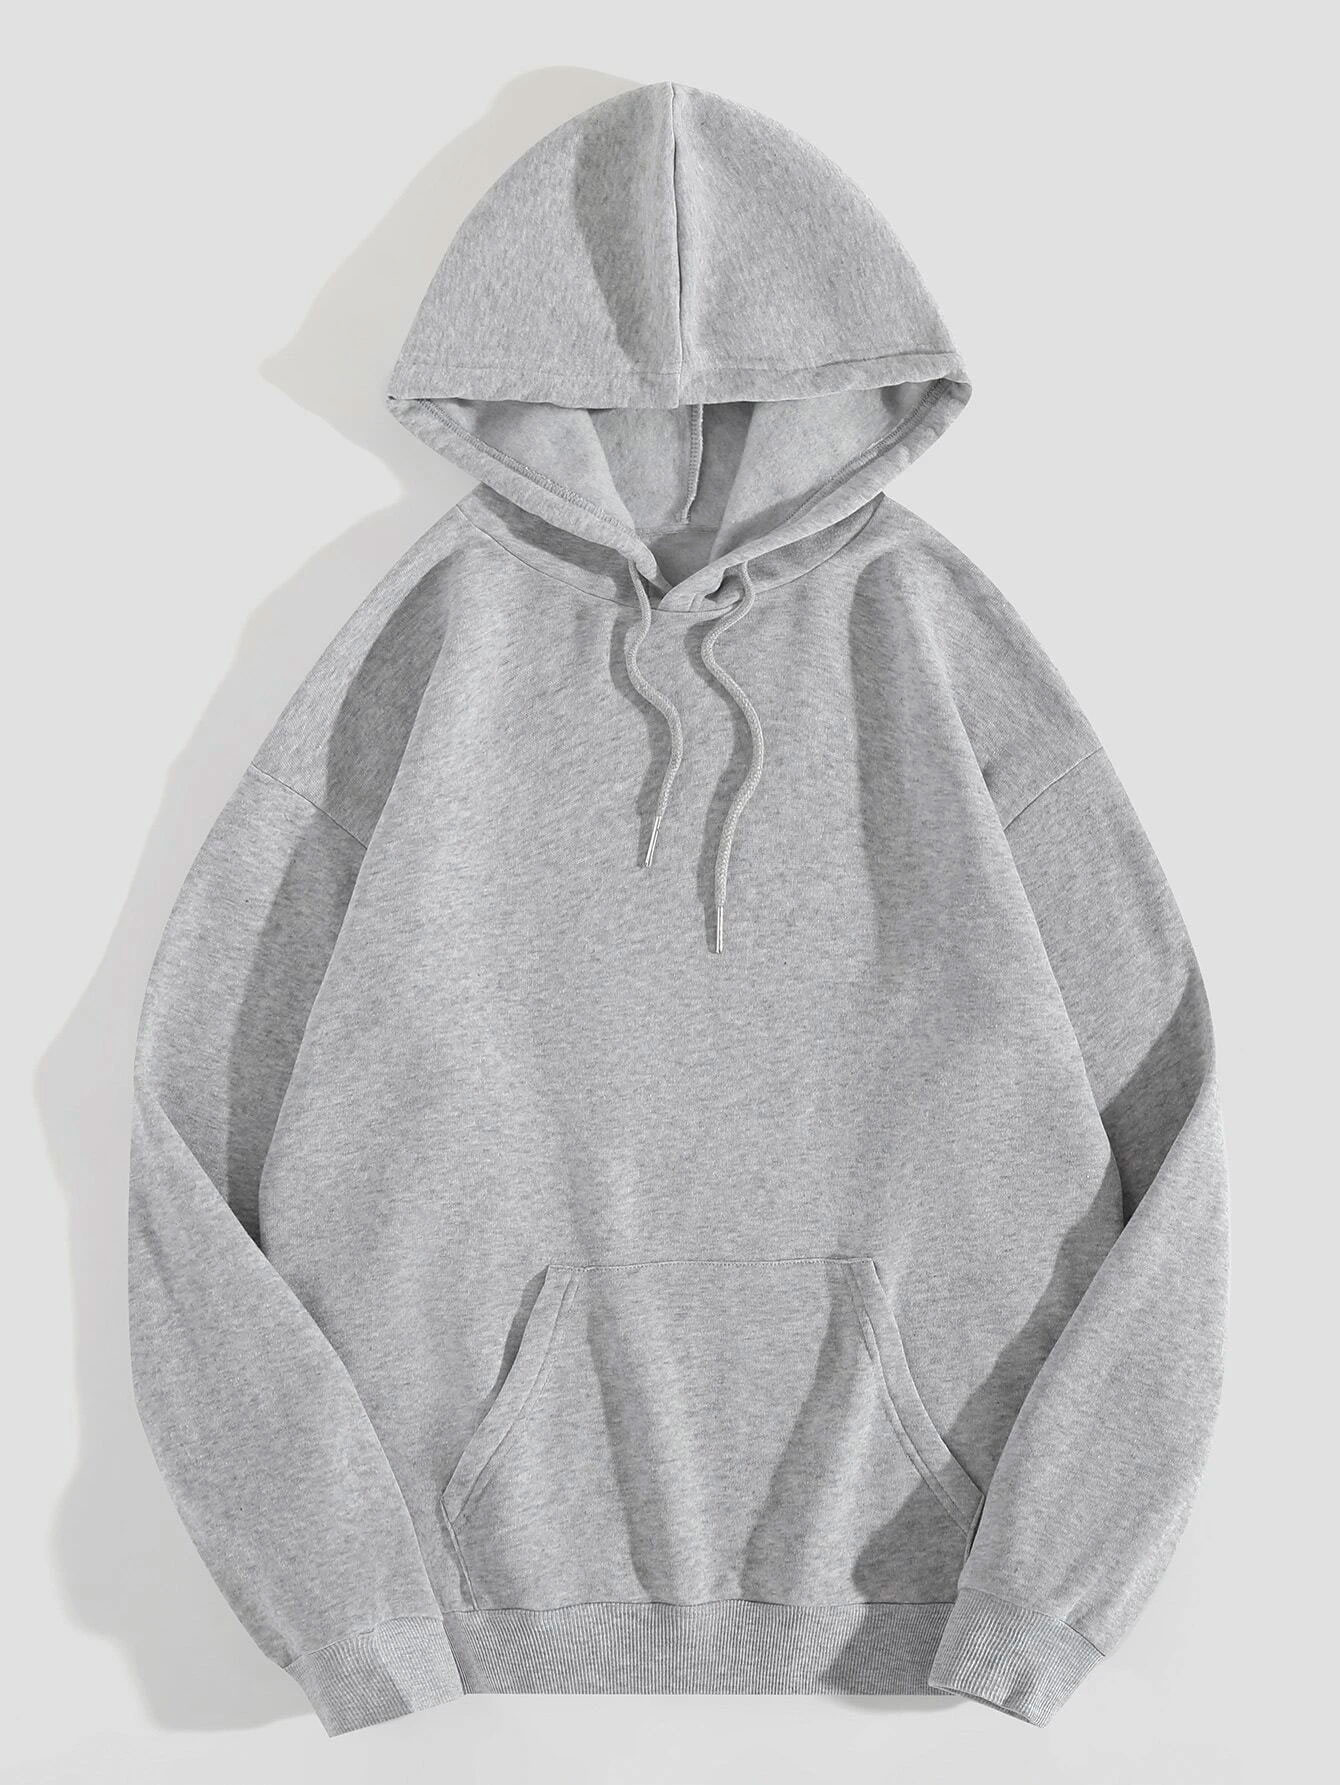 Women's Hoodie Long Sleeve Hoodies & Sweatshirts Printing Pocket Casual Simple Style Letter display picture 3